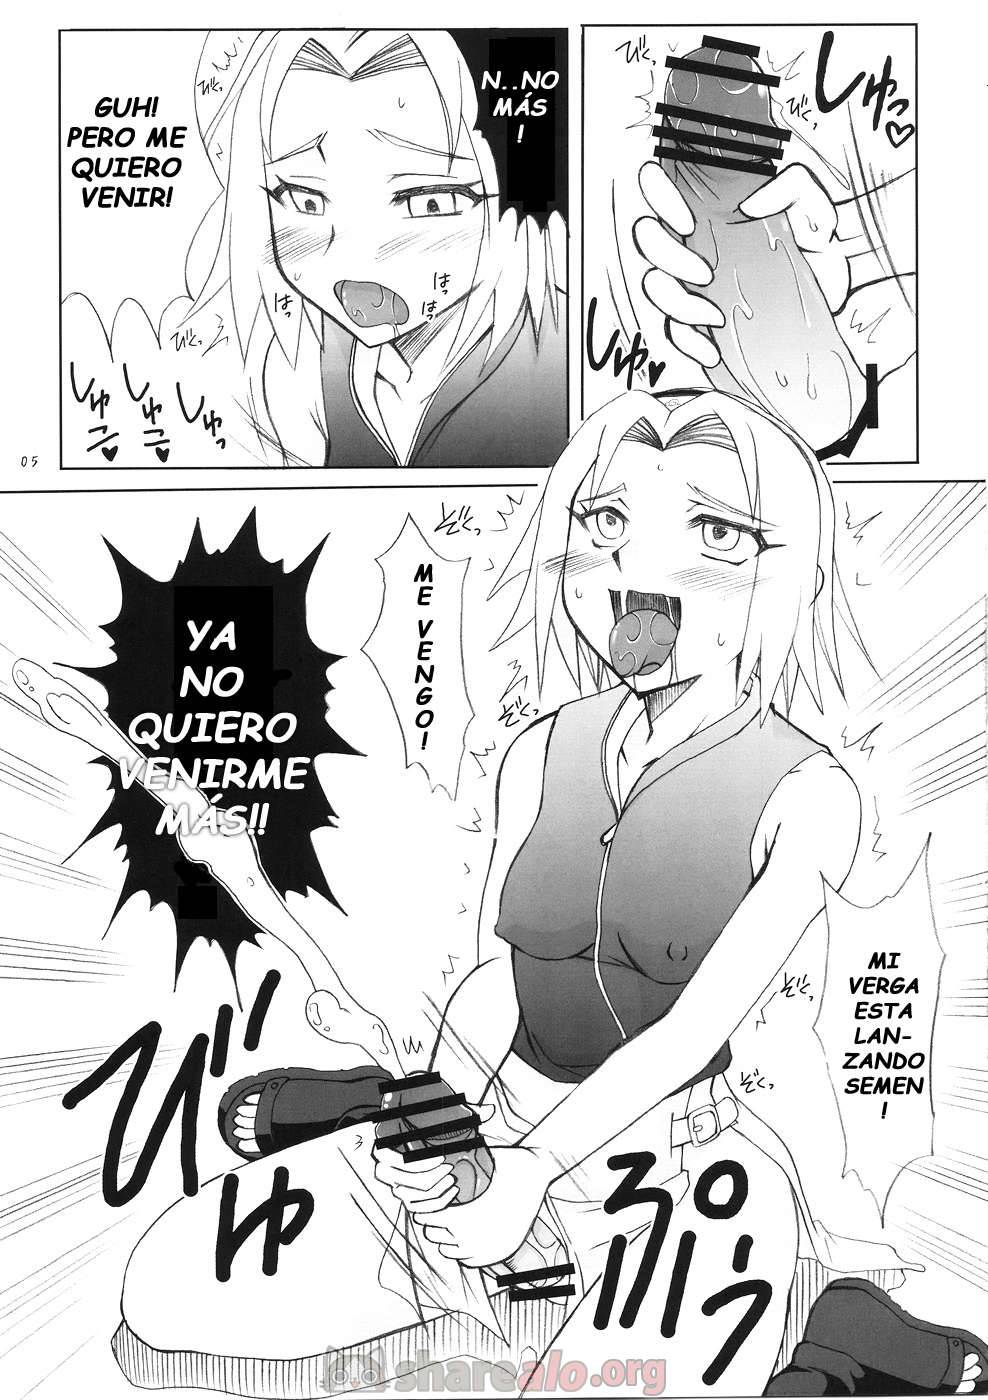 Futanari Kokoro Tenshin (Sakura se Folla a Ino Yamanaka) - 5 - Comics Porno - Hentai Manga - Cartoon XXX